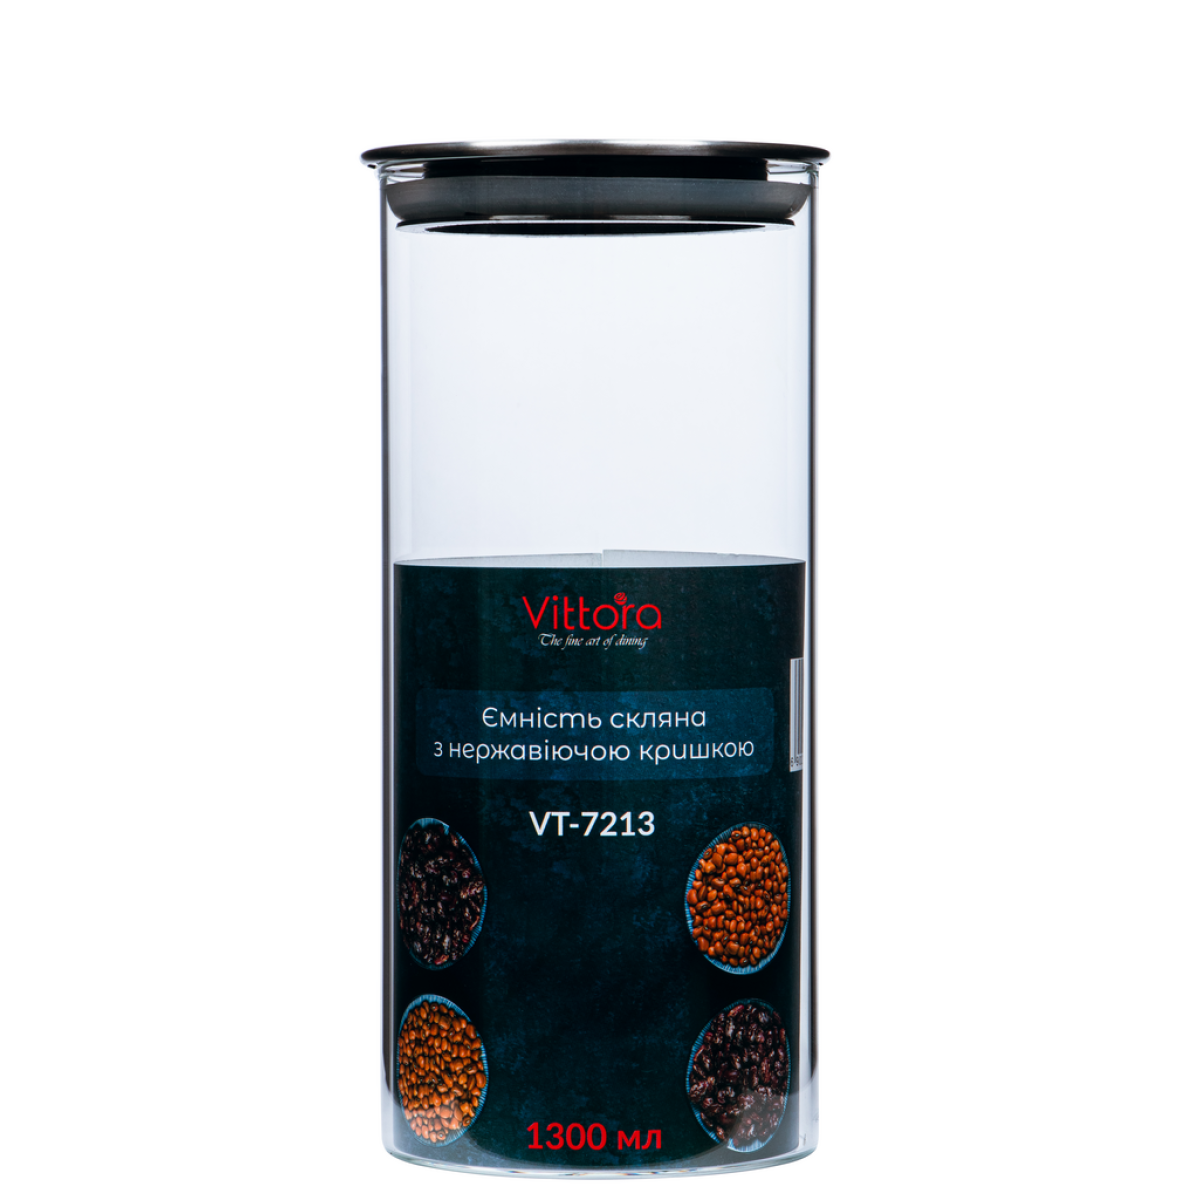 Ємність скляна з нержавіючої кришкою VT-7213 Vittora 1300 мл